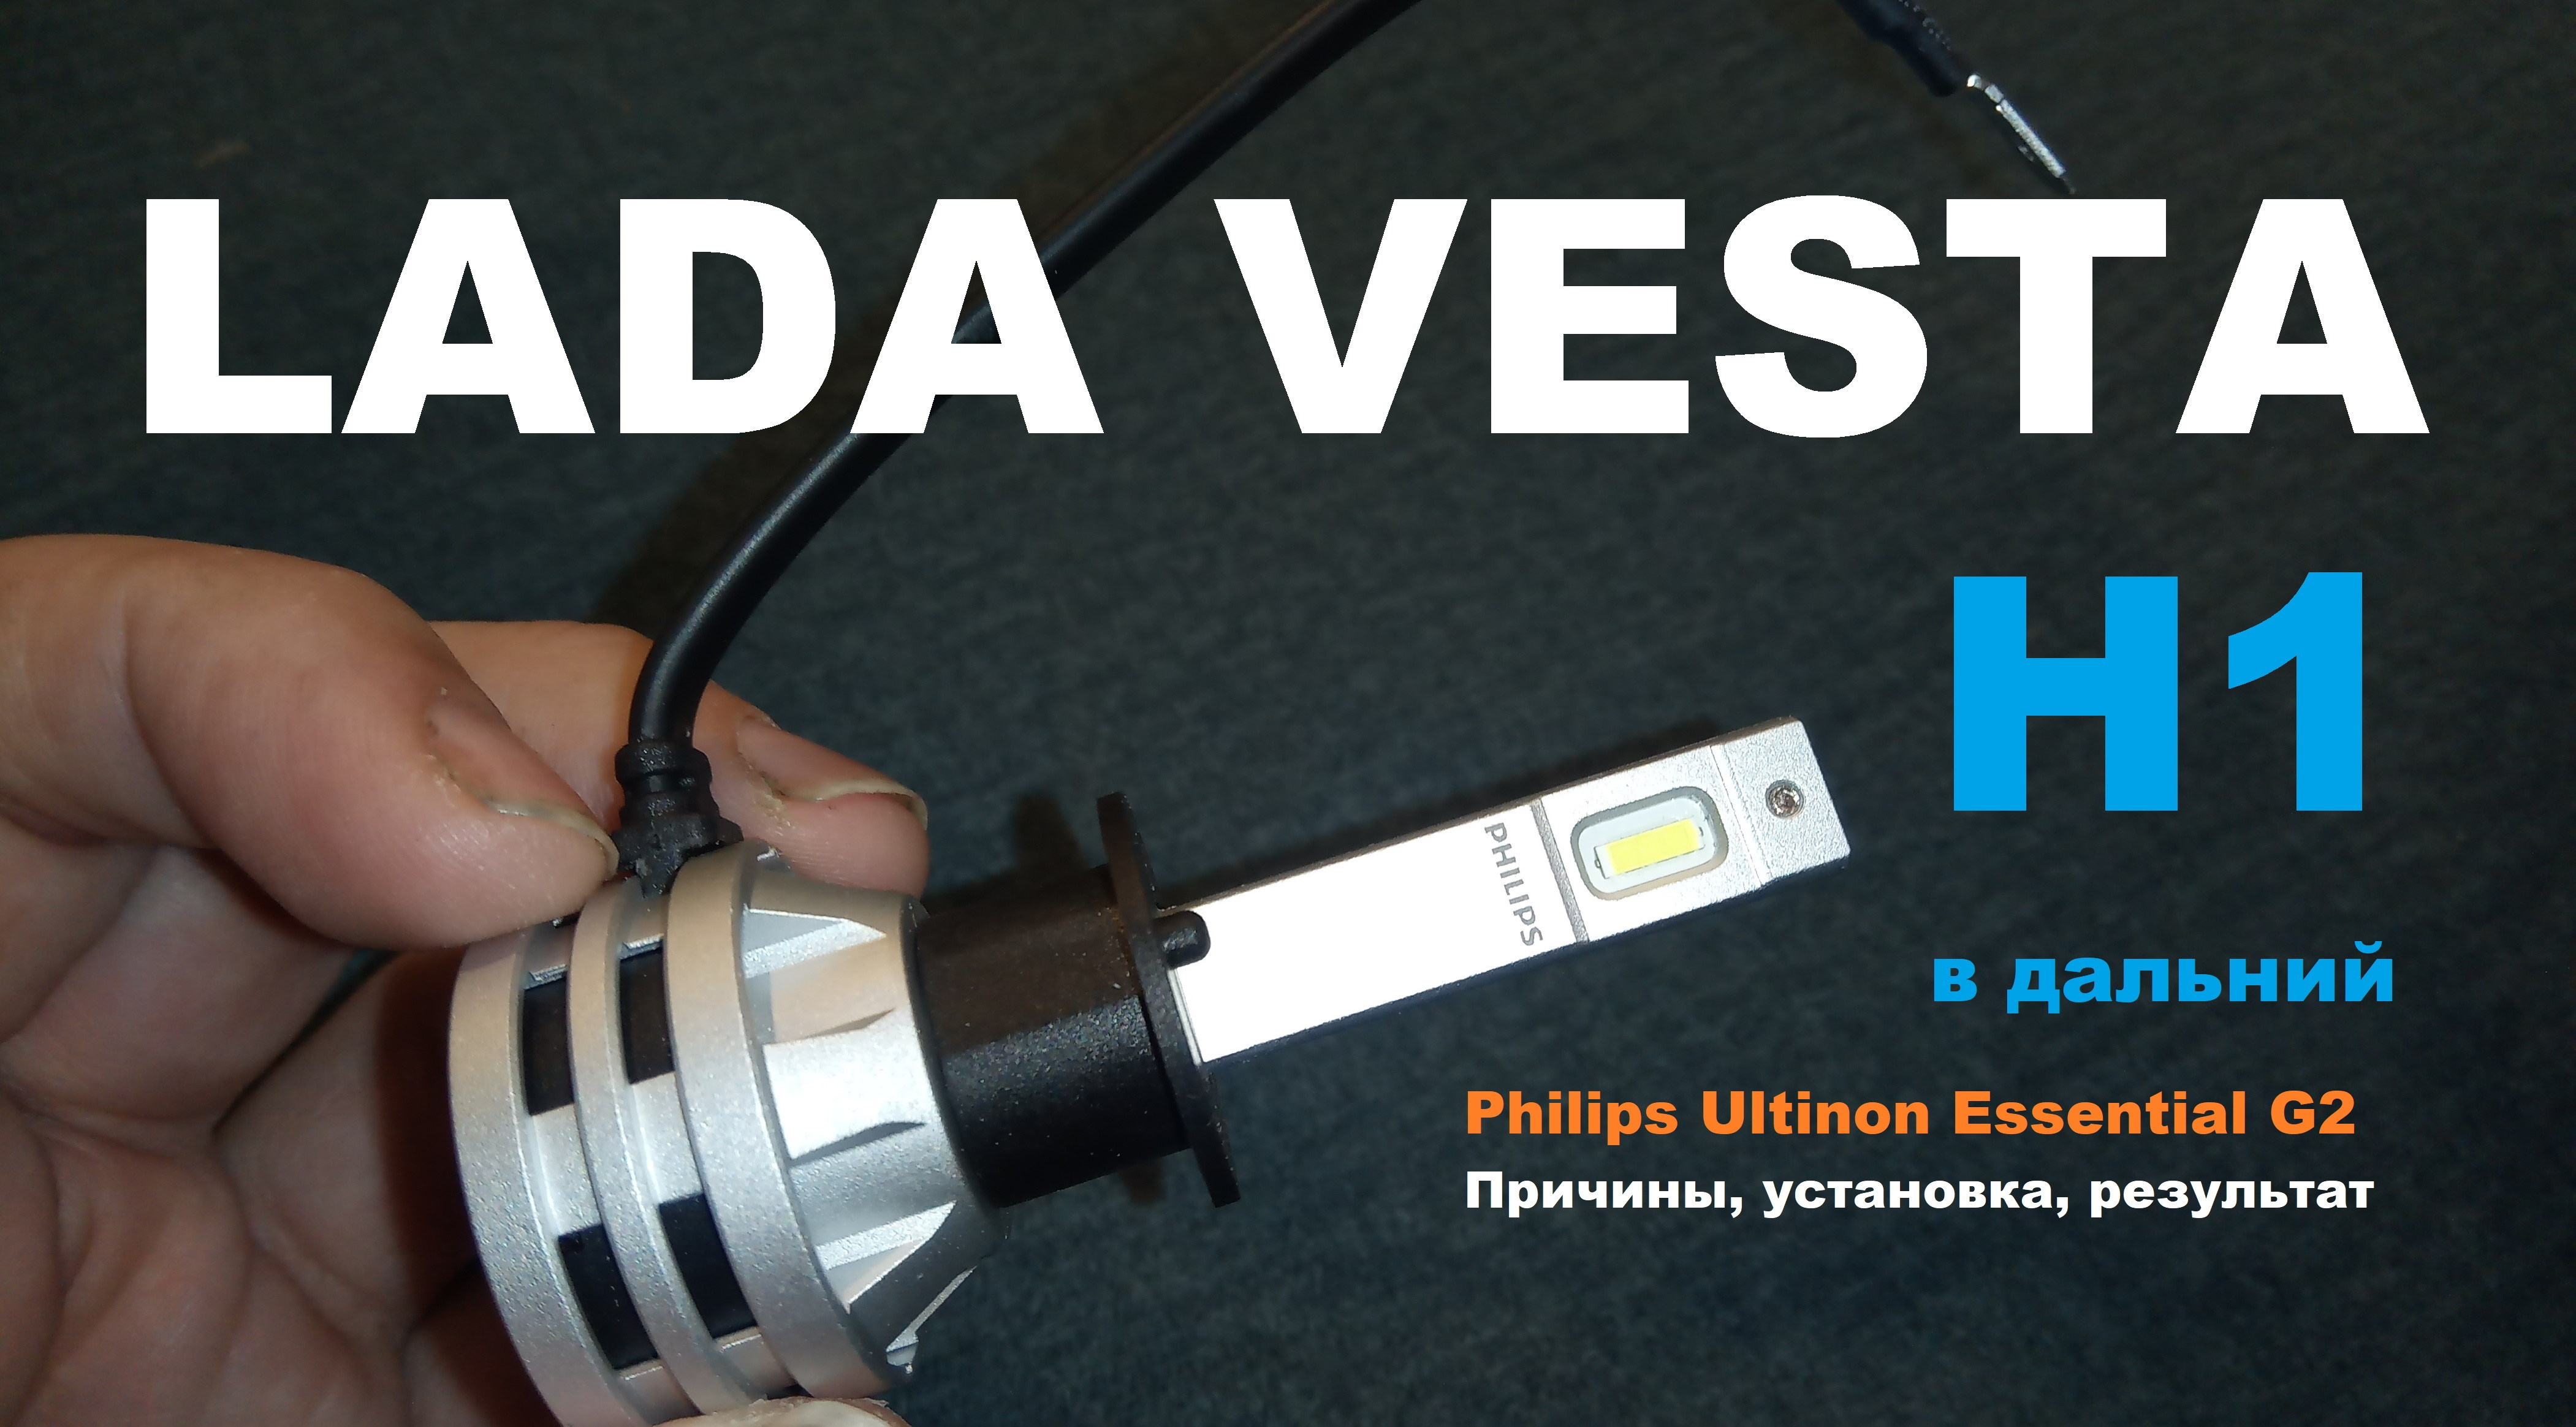 Lada Vesta: Philips H1 LED в дальний. Причины, установка, результат.